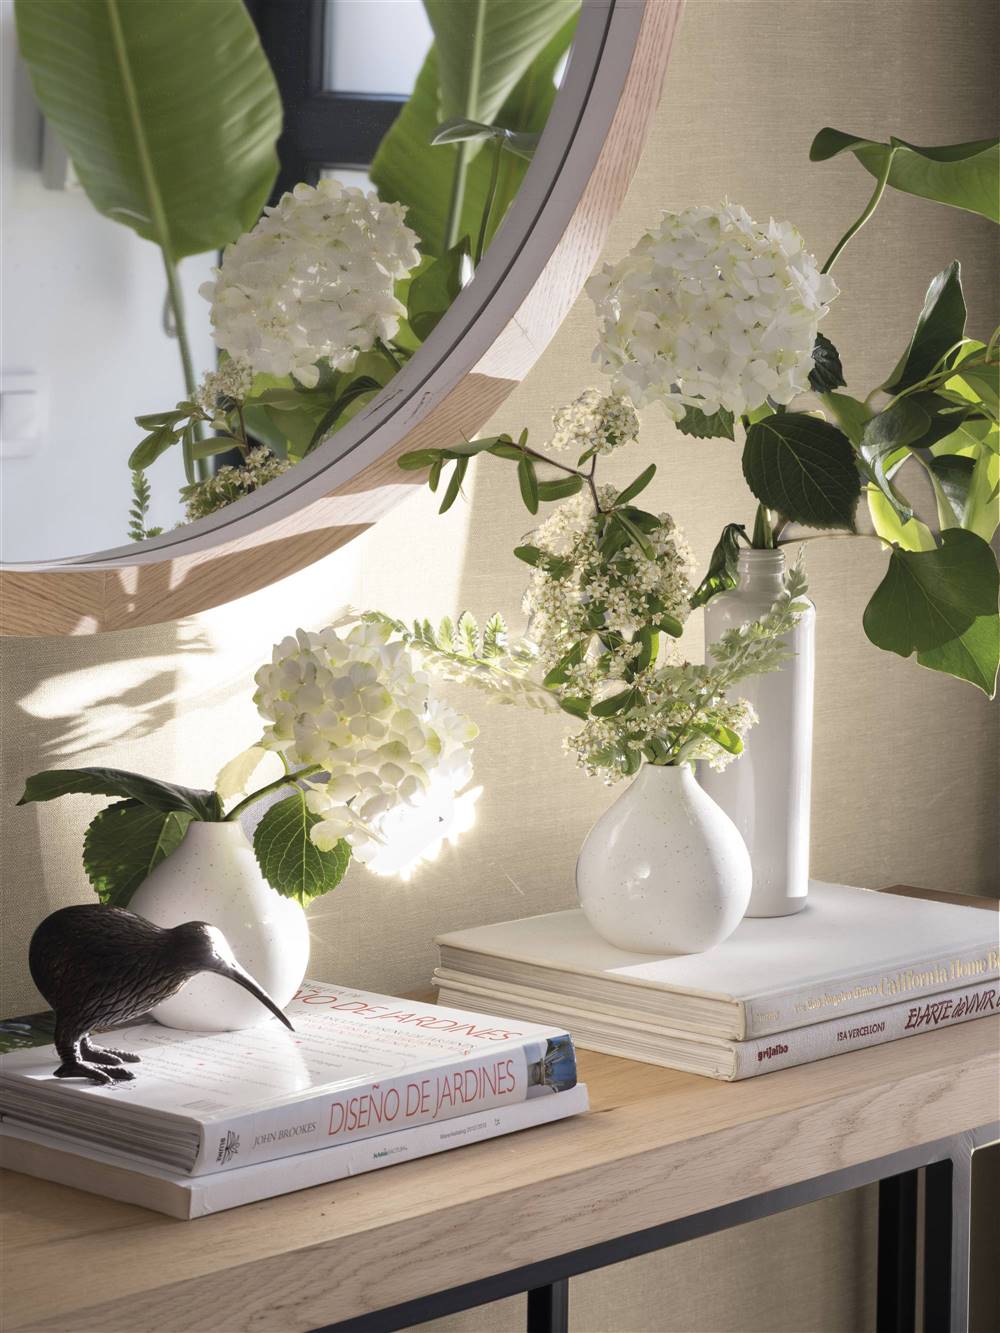 Detalles recibidor claro con espejo redondo, plantas y libros - 00527518